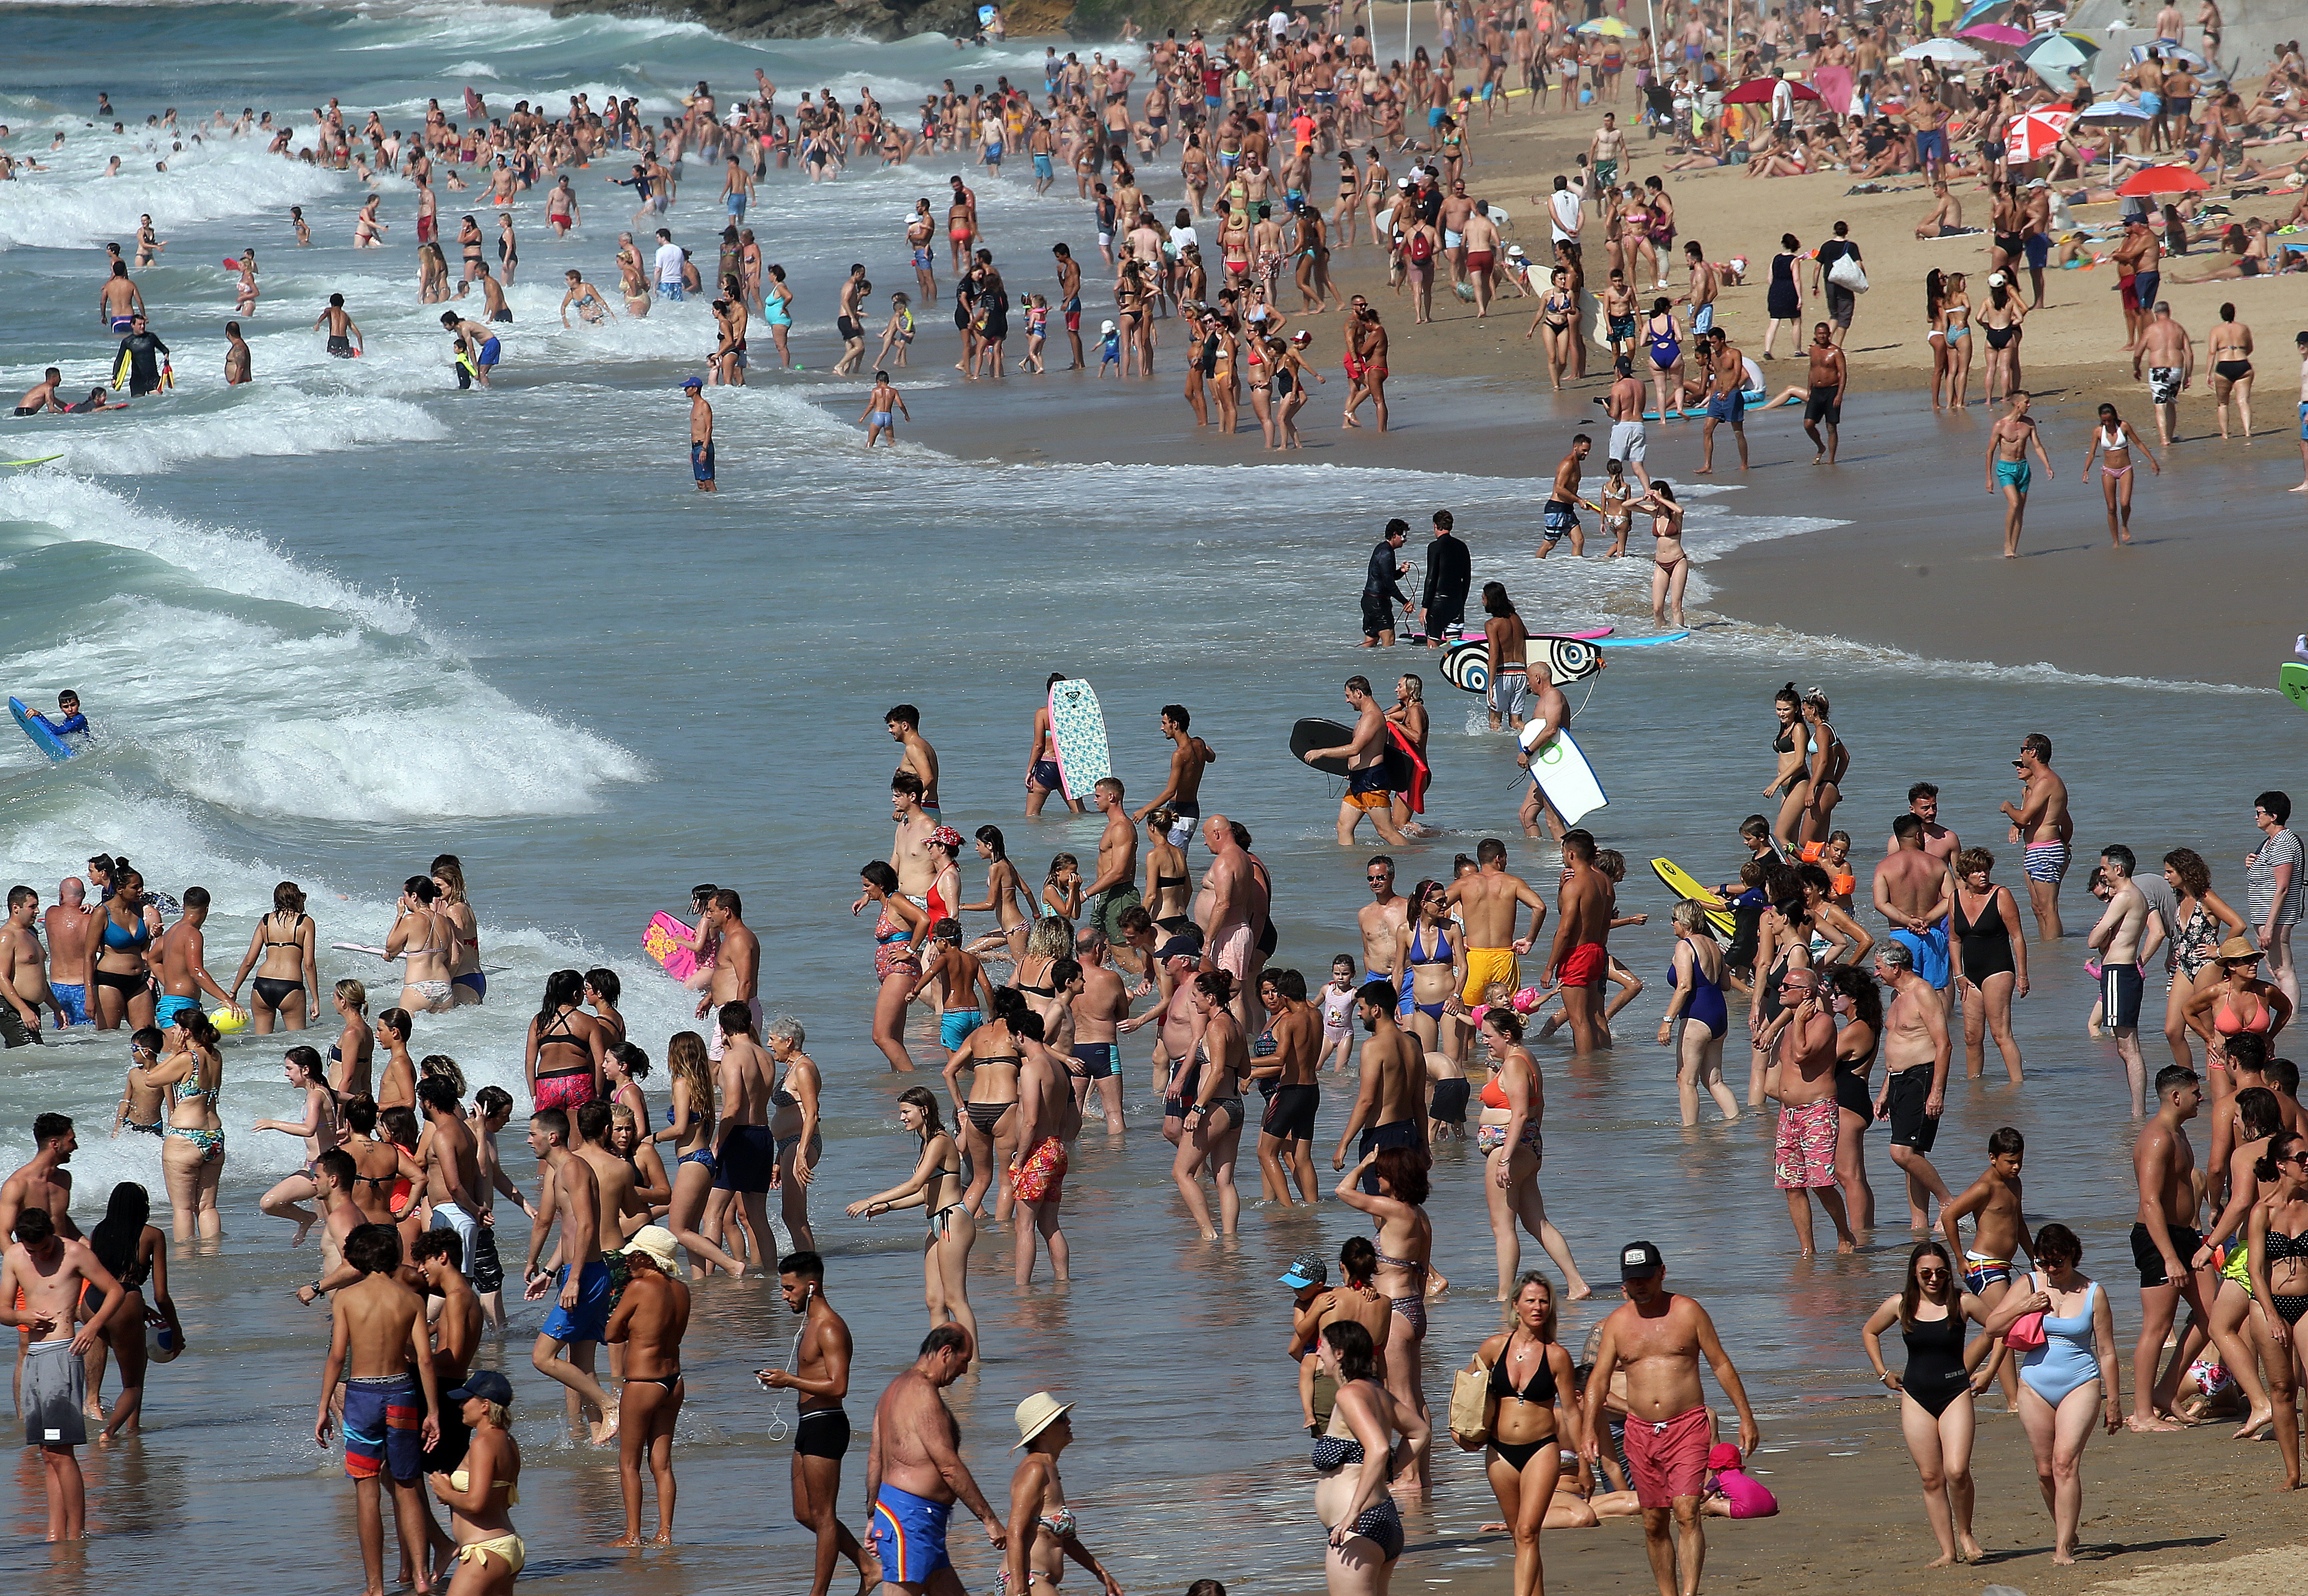 炎热的气温持续下，法国民众都忍不住涌到沙滩享受清凉的海水。 (美联社图片)